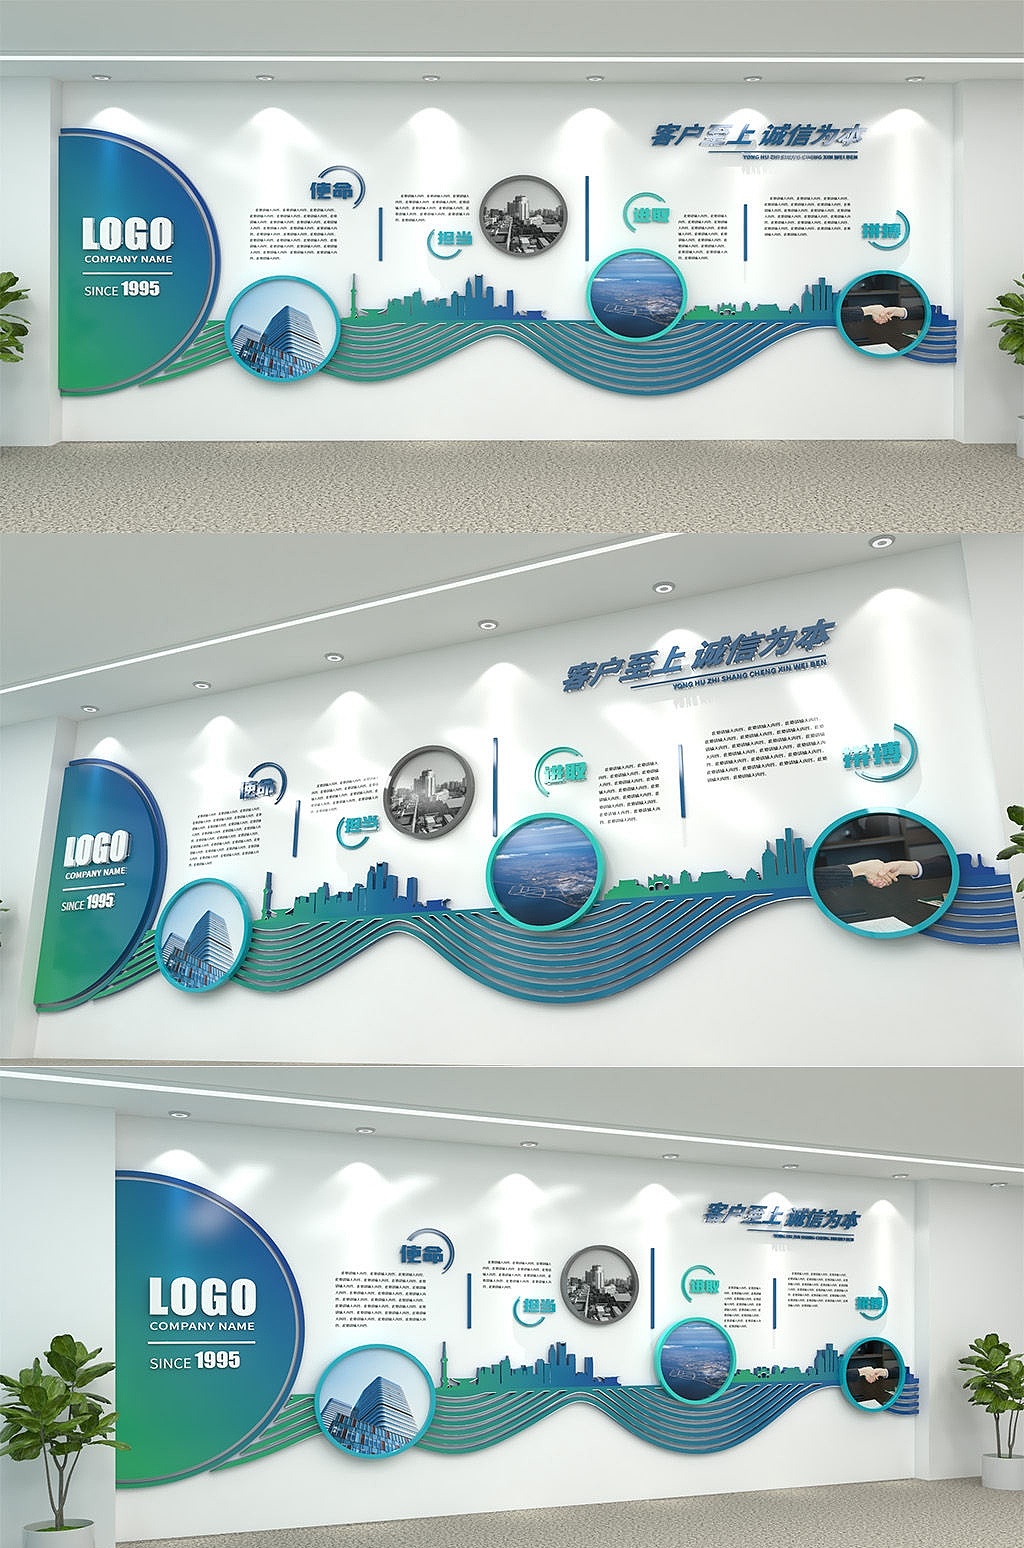 前台形象墙如何设计提升公司颜值-上海恒心广告集团